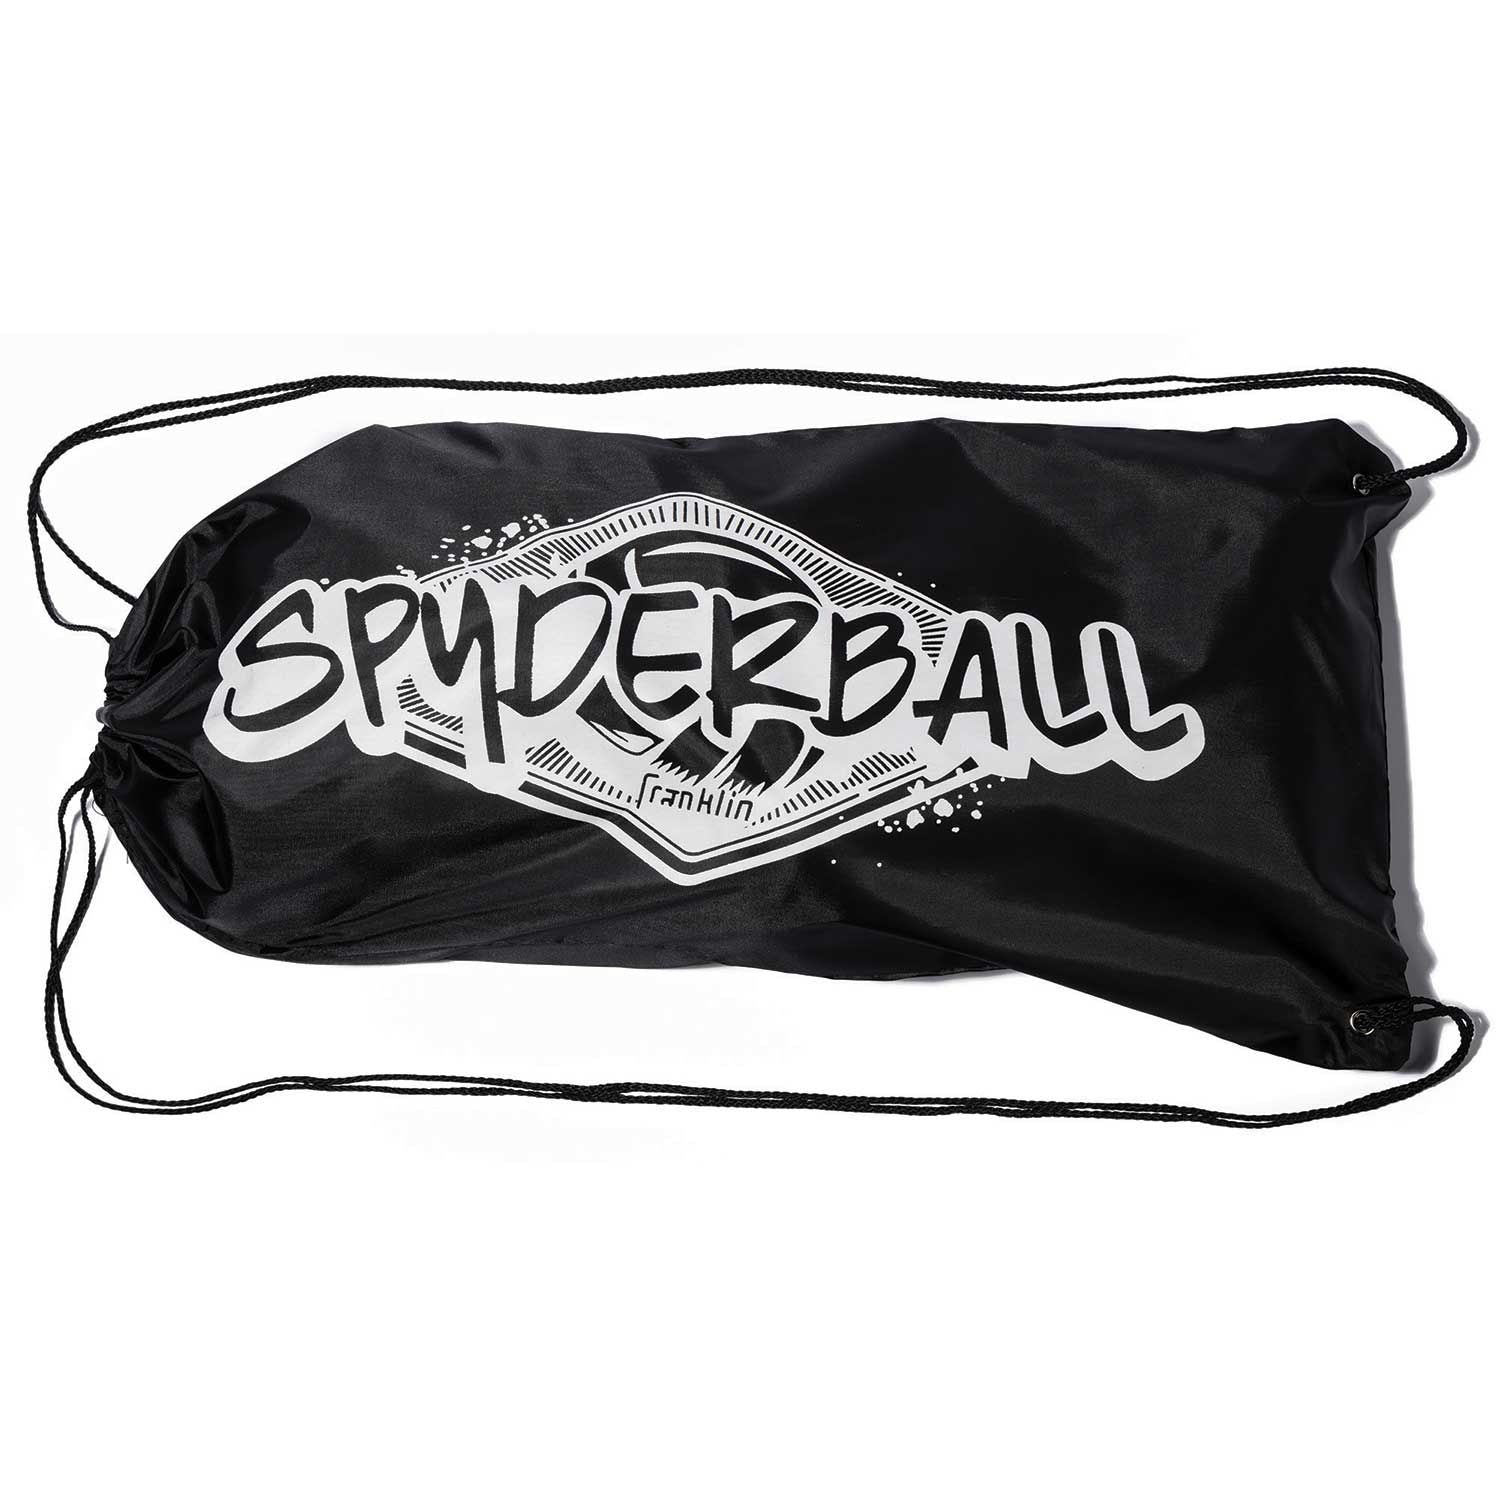 Franklin Sports Spyderball